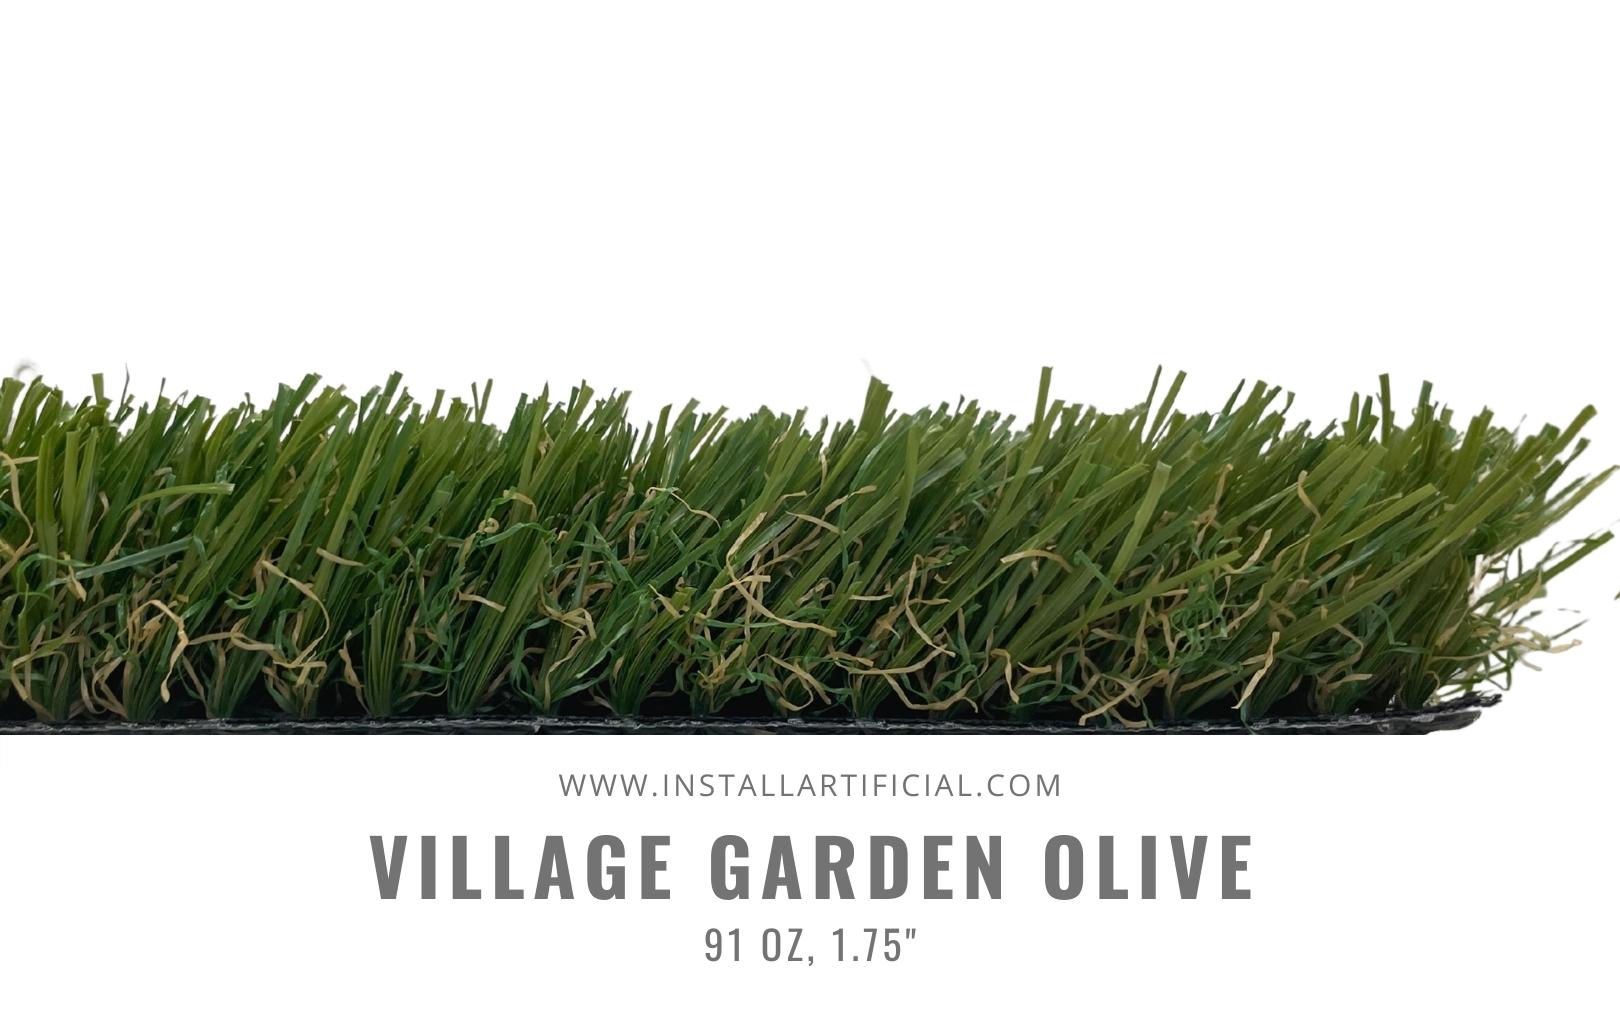 Village Garden Olive, Shawgrass, side